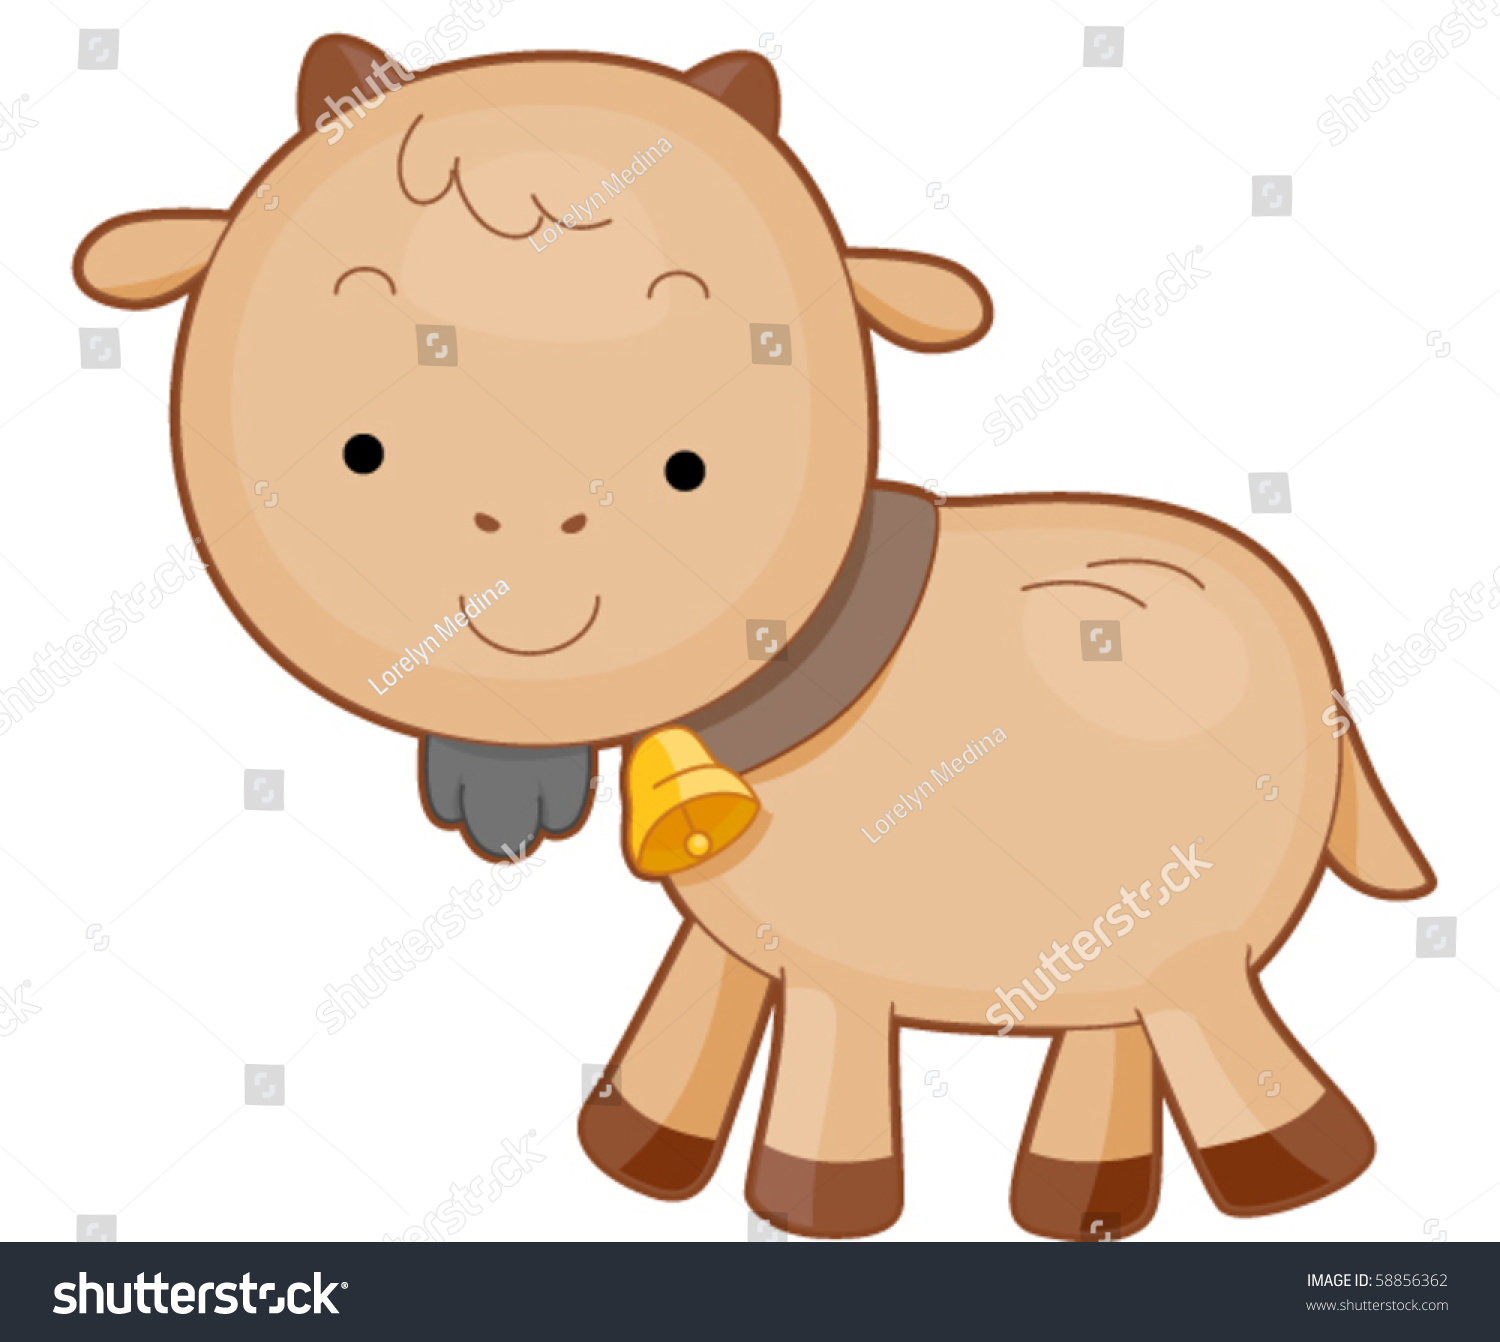 Download Cute Baby Goat Bell Vector Stock Vector 58856362 ...